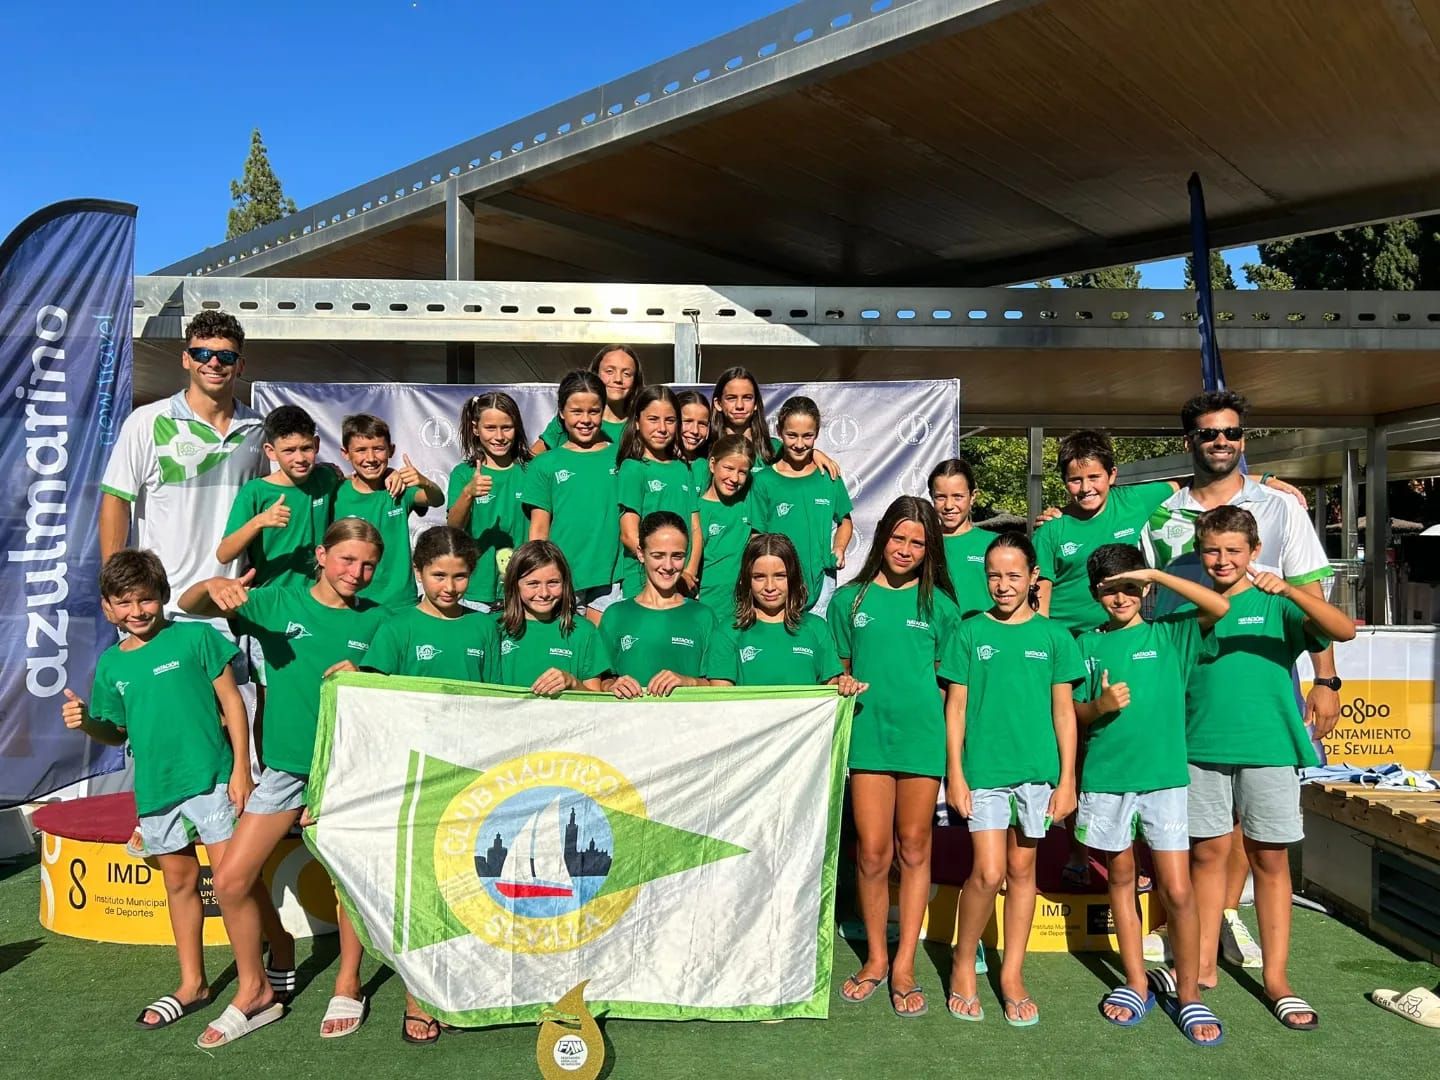 Campeonato de Andalucía de Jóvenes Nadadores benjamín de verano